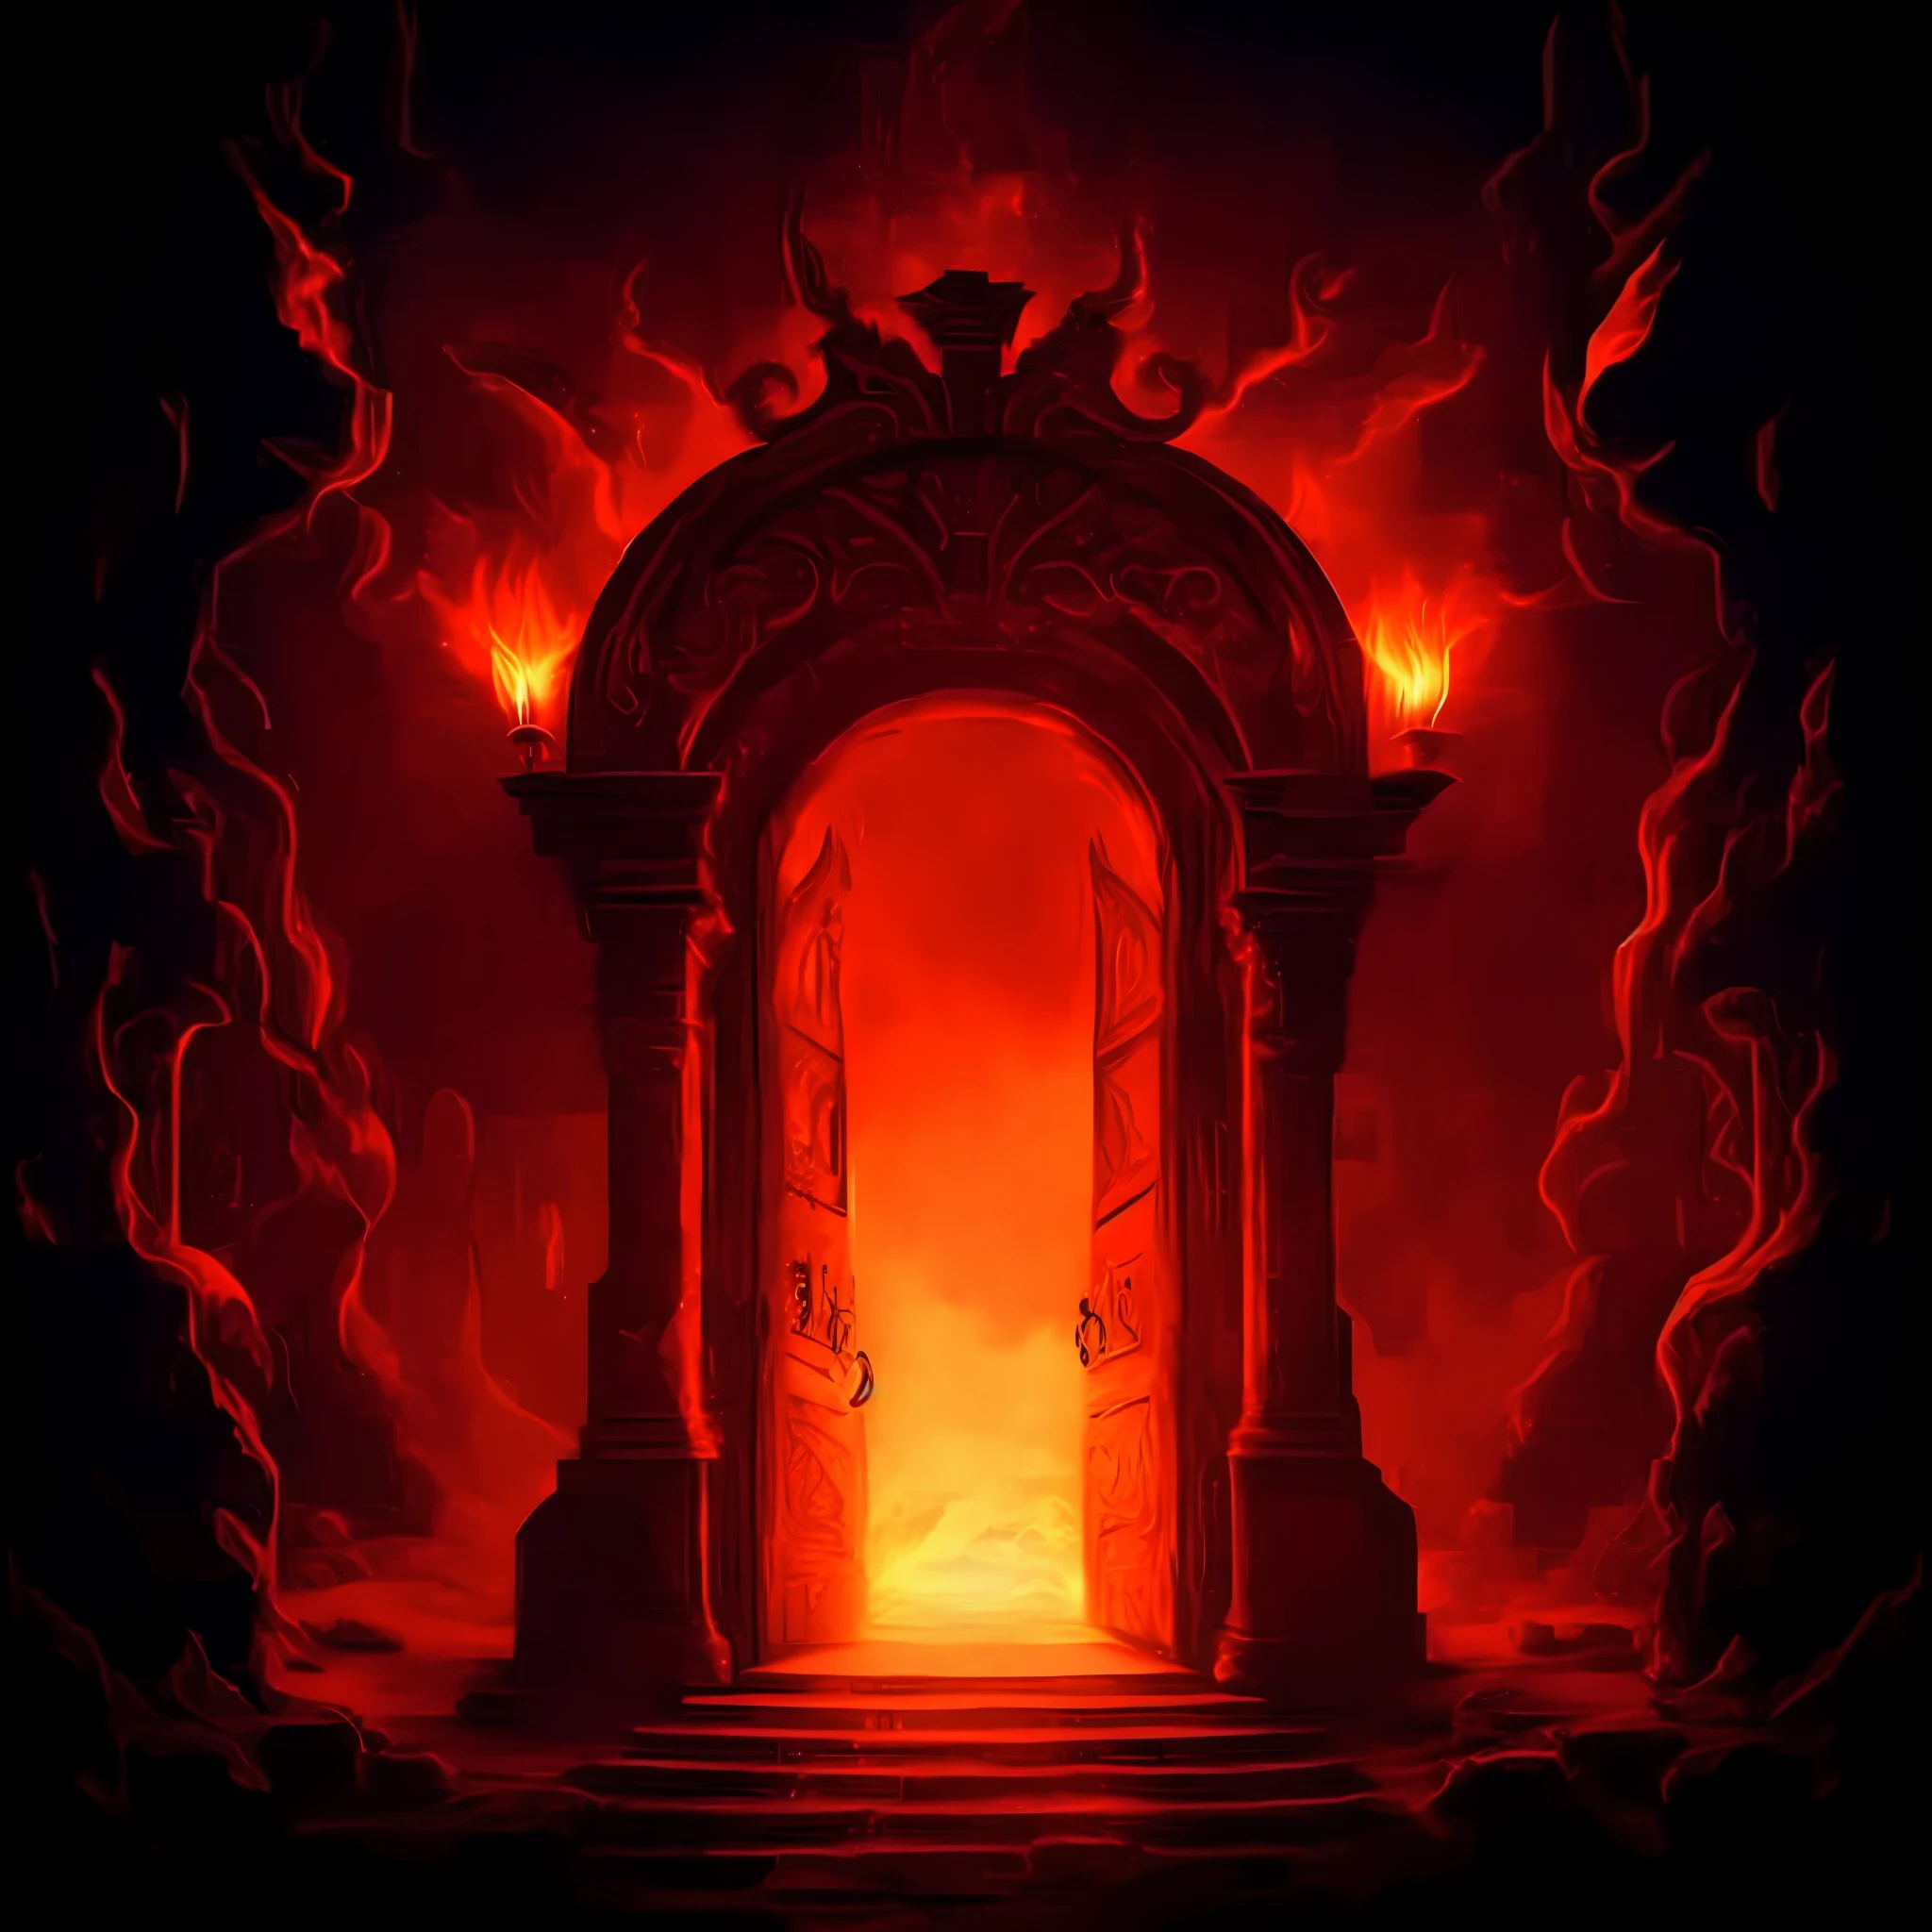 красная пожарная дверь в темной комнате, из которой выходит огонь, портал в затерянное царство пламени, портал в ад, врата в ад, the врата в ад, the Врата ада, Врата ада, Великая дверь ада, Адский фон, портал в эфирное царство, изучаю адский портал открытого разлома, портал в глубины